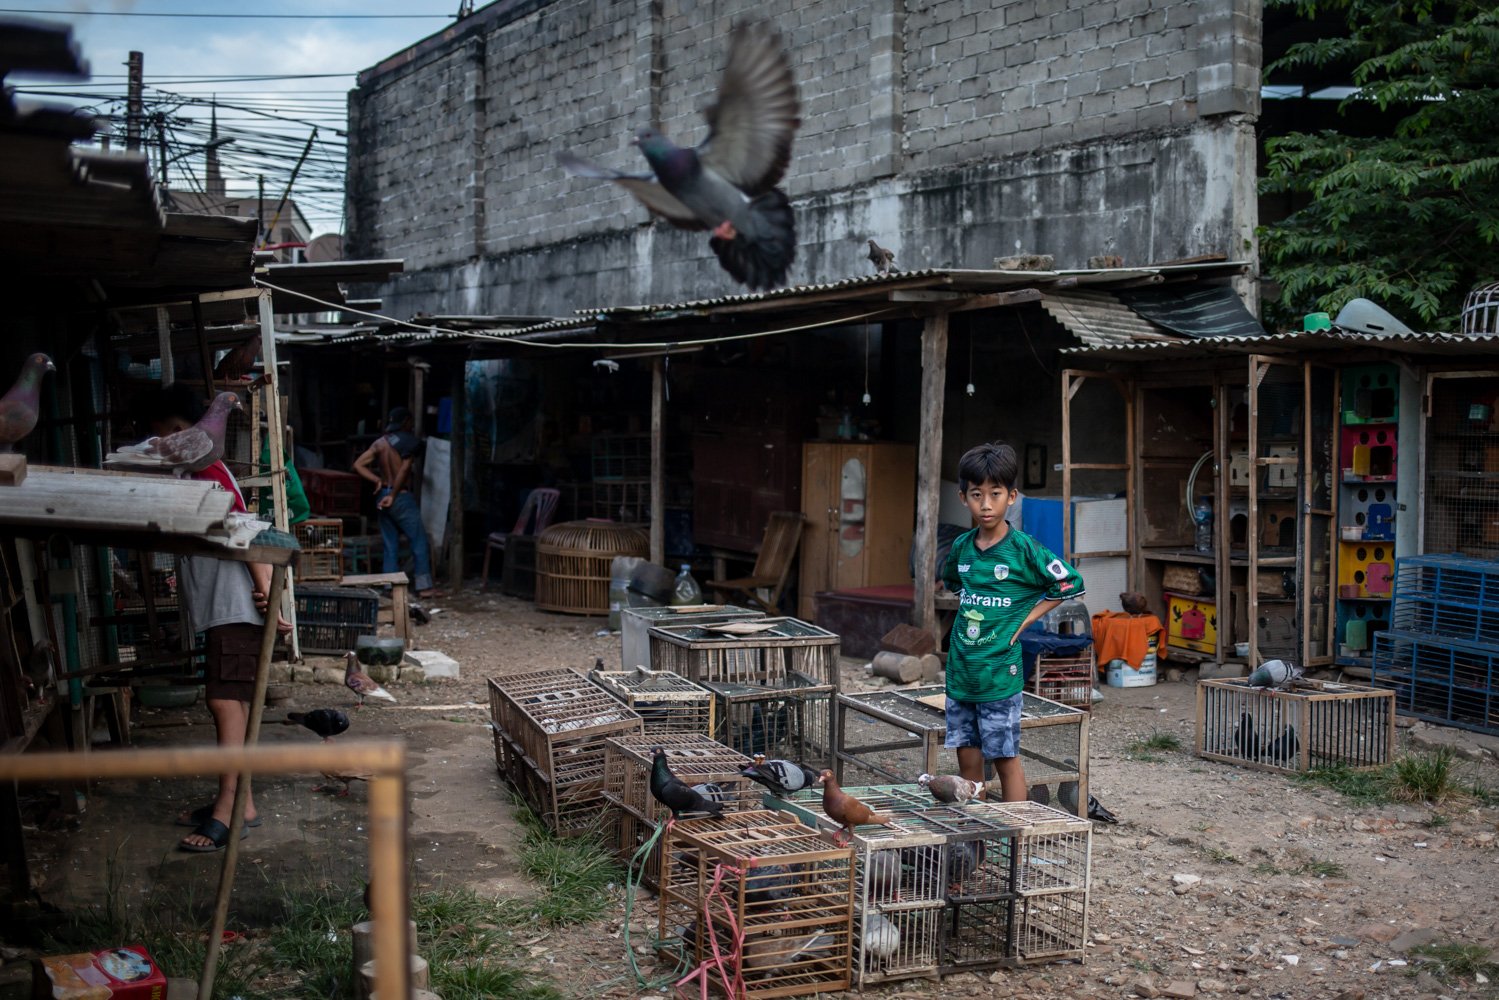 Seorang bocah mengamati burung dara miliknya di wilayah Muria Dalam, Jakarta Selatan, Rabu (12/04). Warga yang masih bertahan mendirikan kandang-kandang burung di antara tembok-tembok pembatas setinggi dua meter. Tembok ini didirikan oleh pengembang infrastruktur yang telah membeli hampir seluruh tanah di wilayah itu.